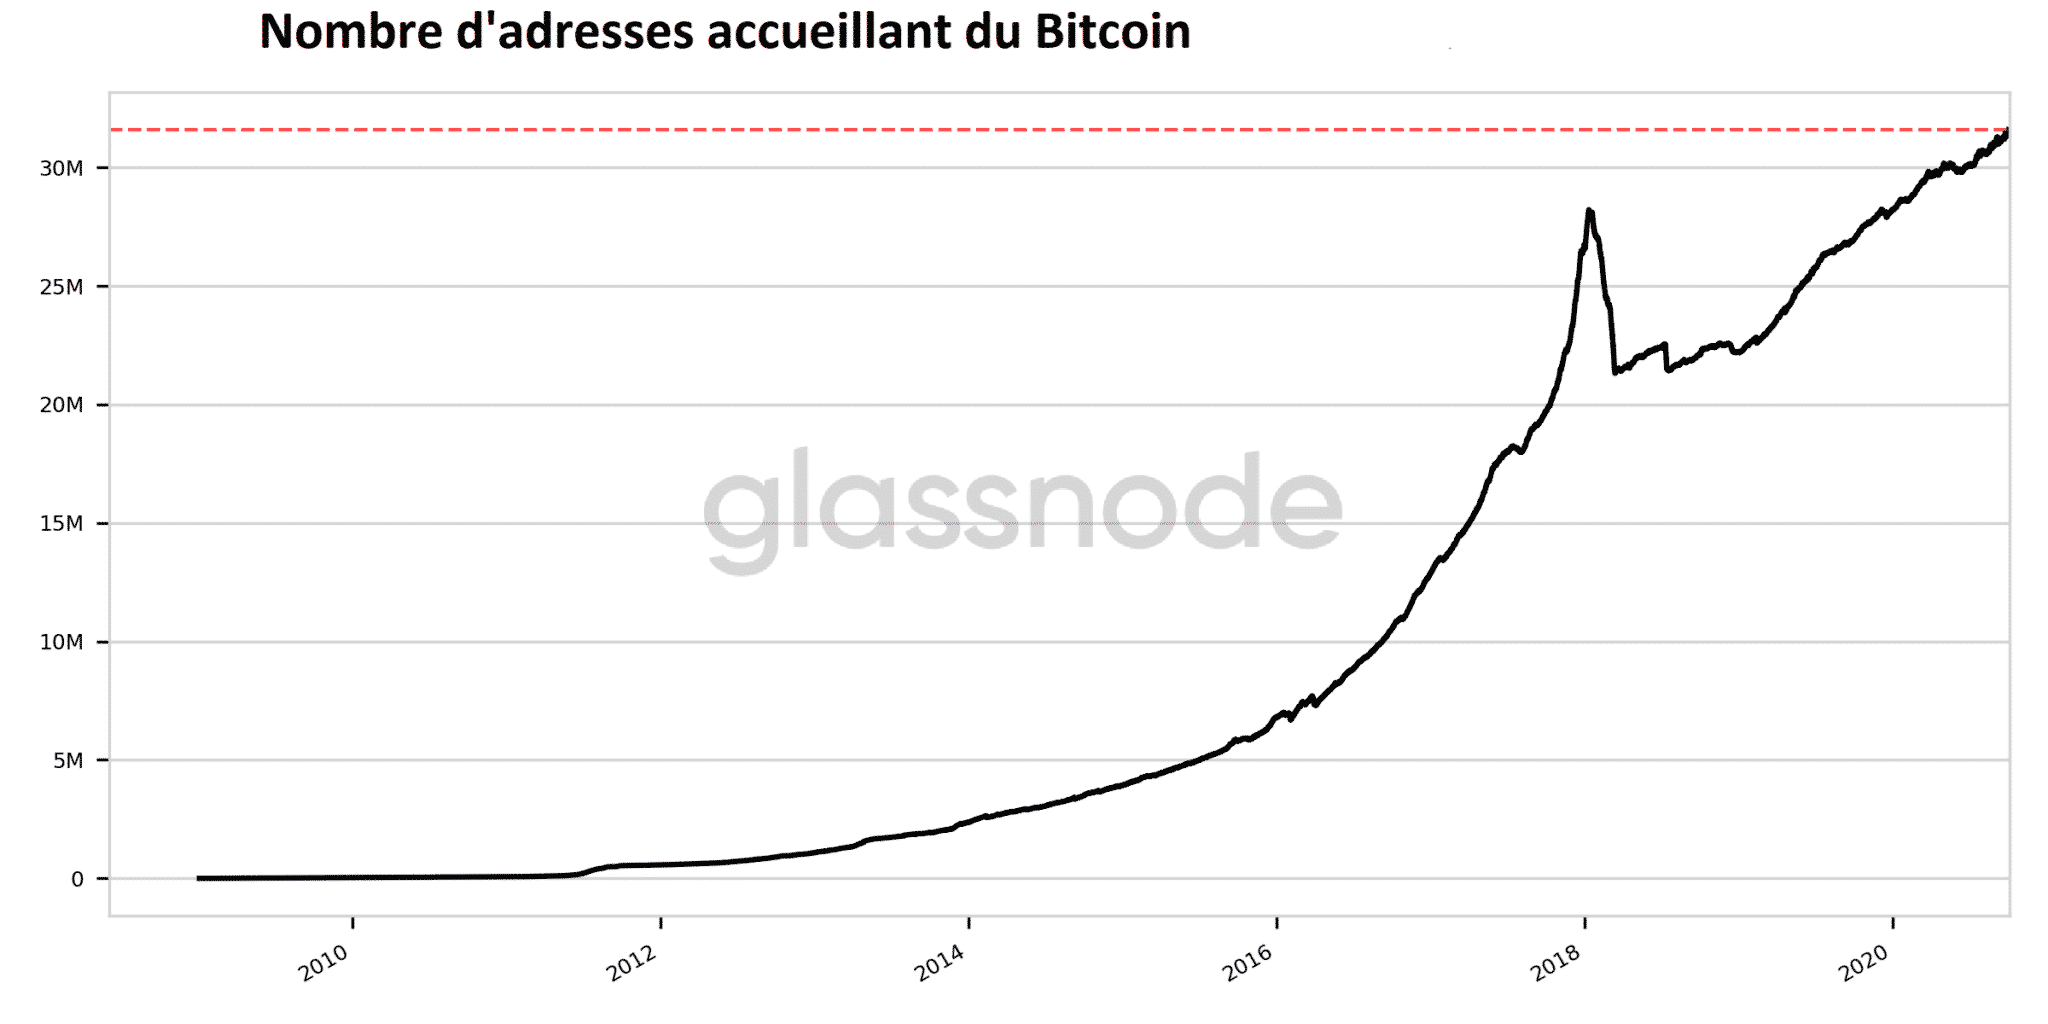 Nombre d'adresses possedant du Bitcoin